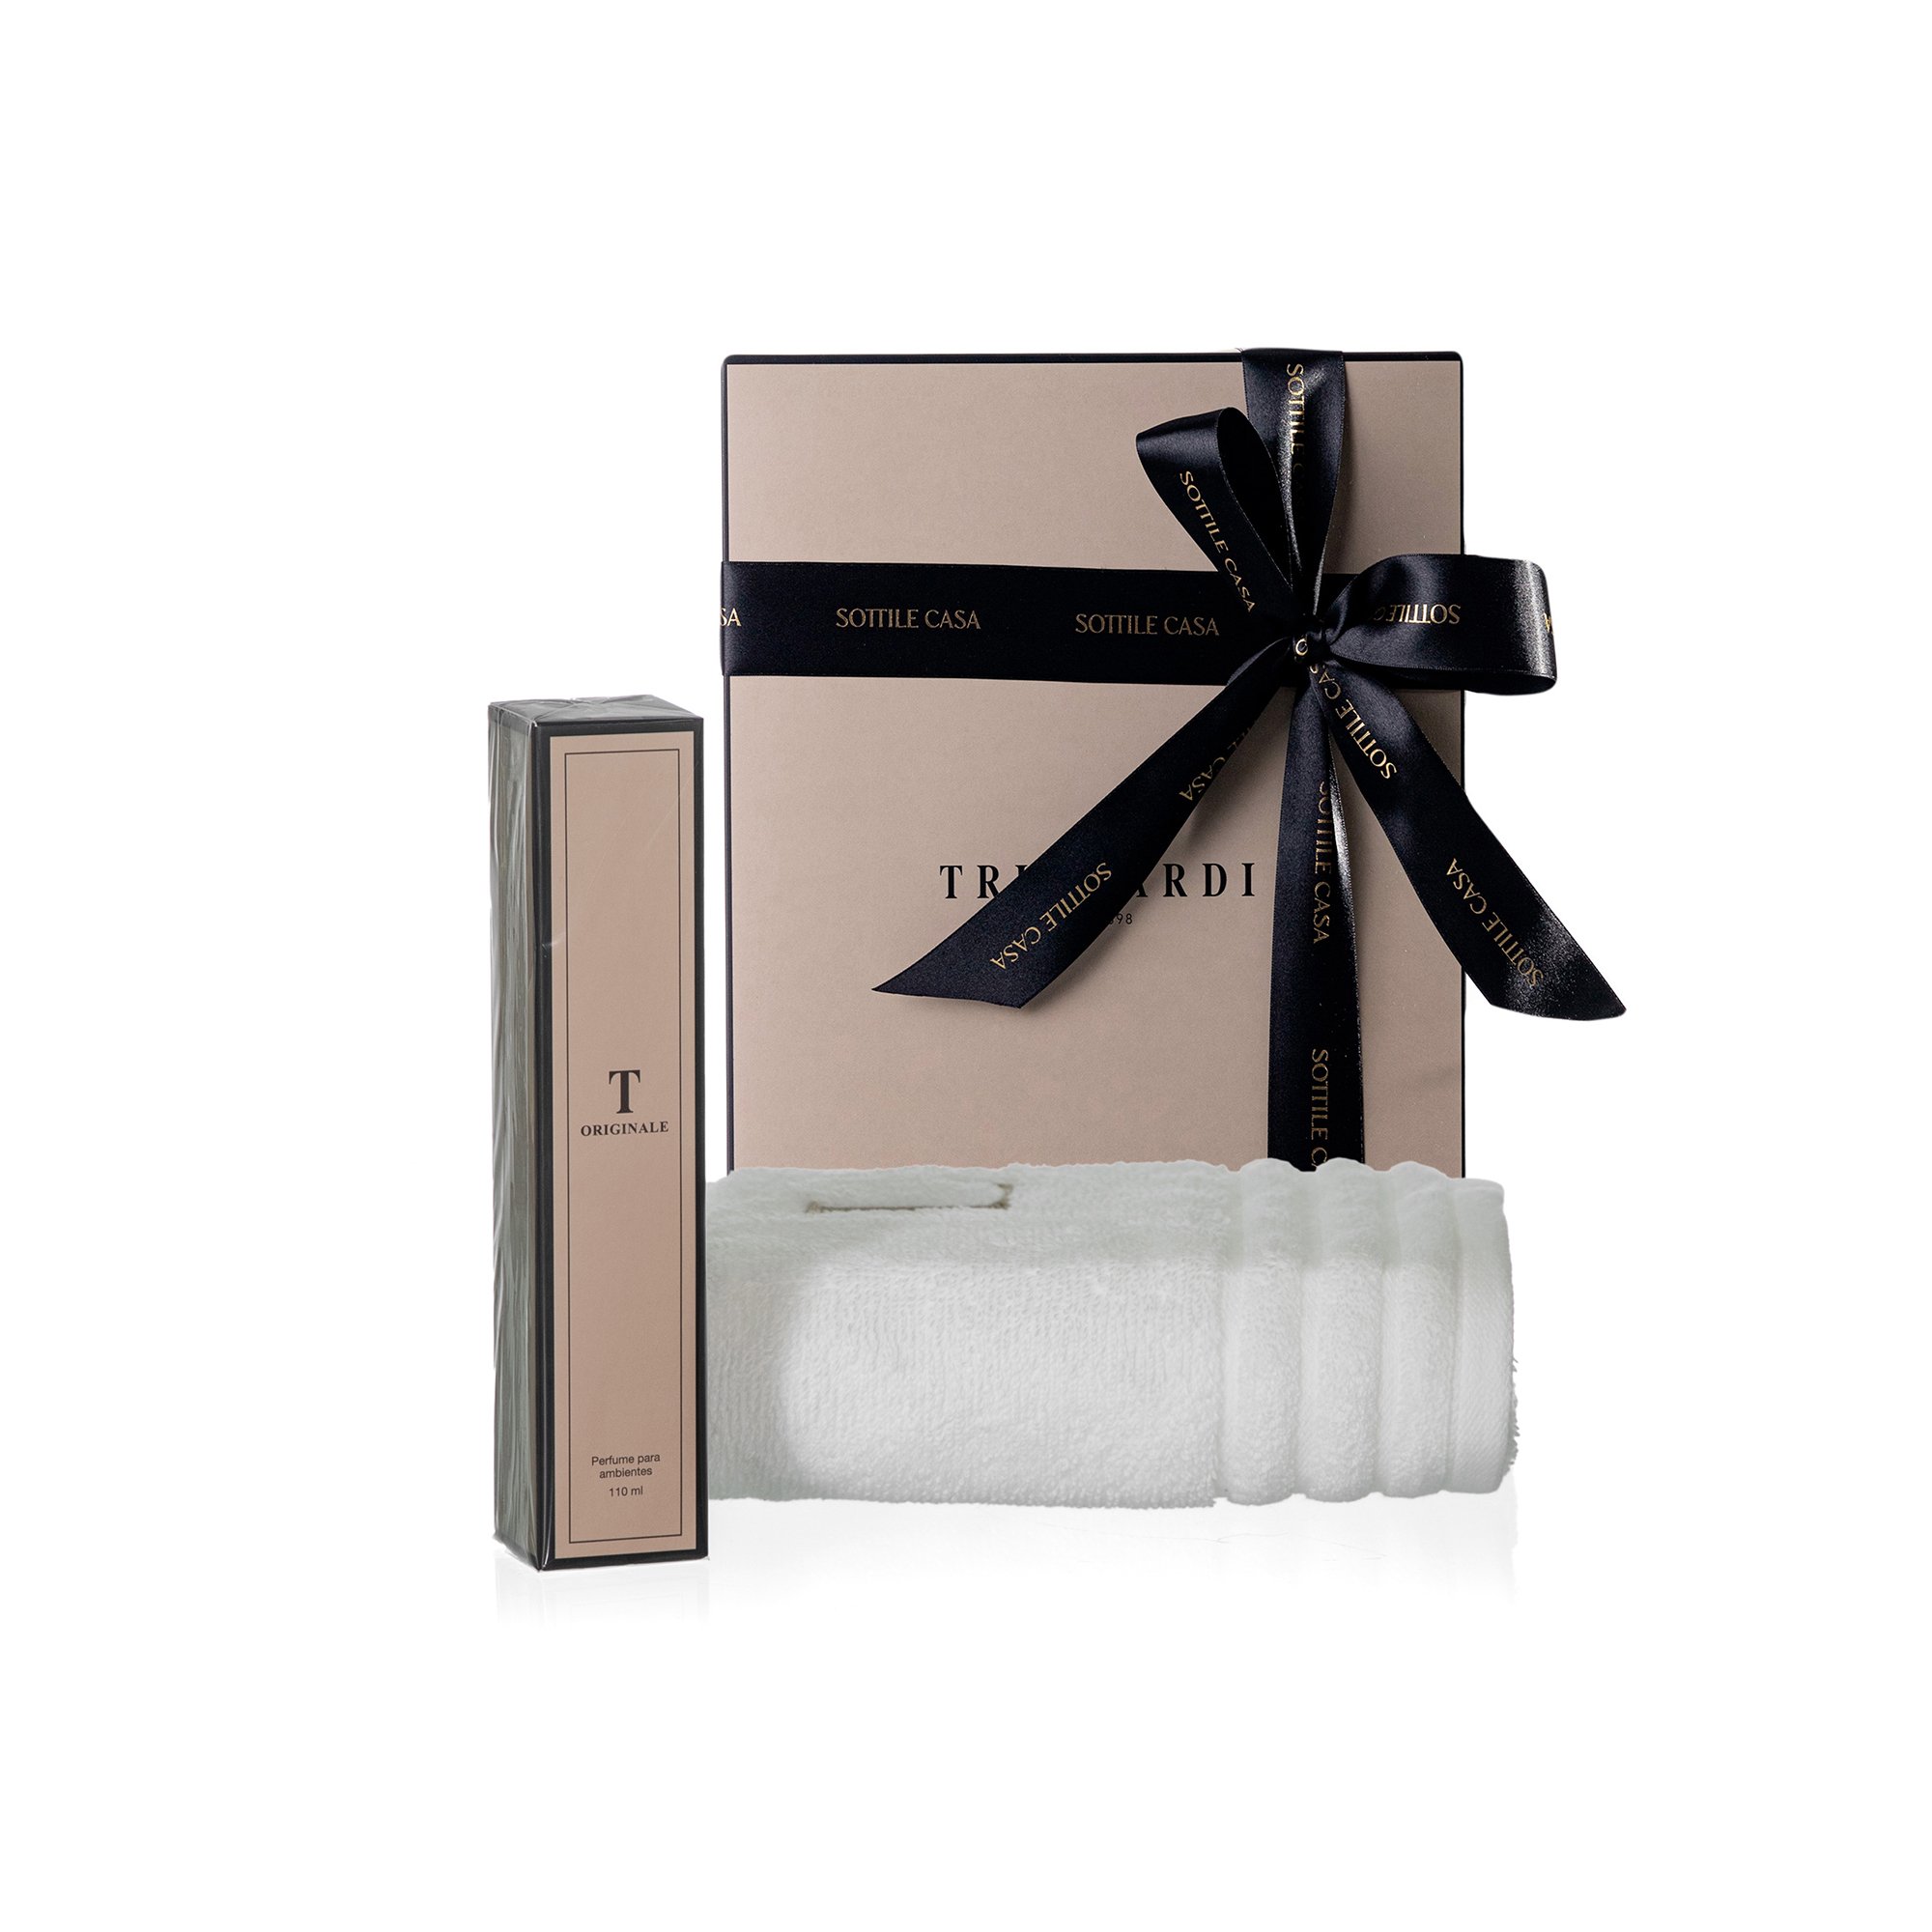 kit toalha de rosto 100 algodao trussardi imperiale branco com perfume para ambientes trussardi 110ml originale com caixa de presente 3